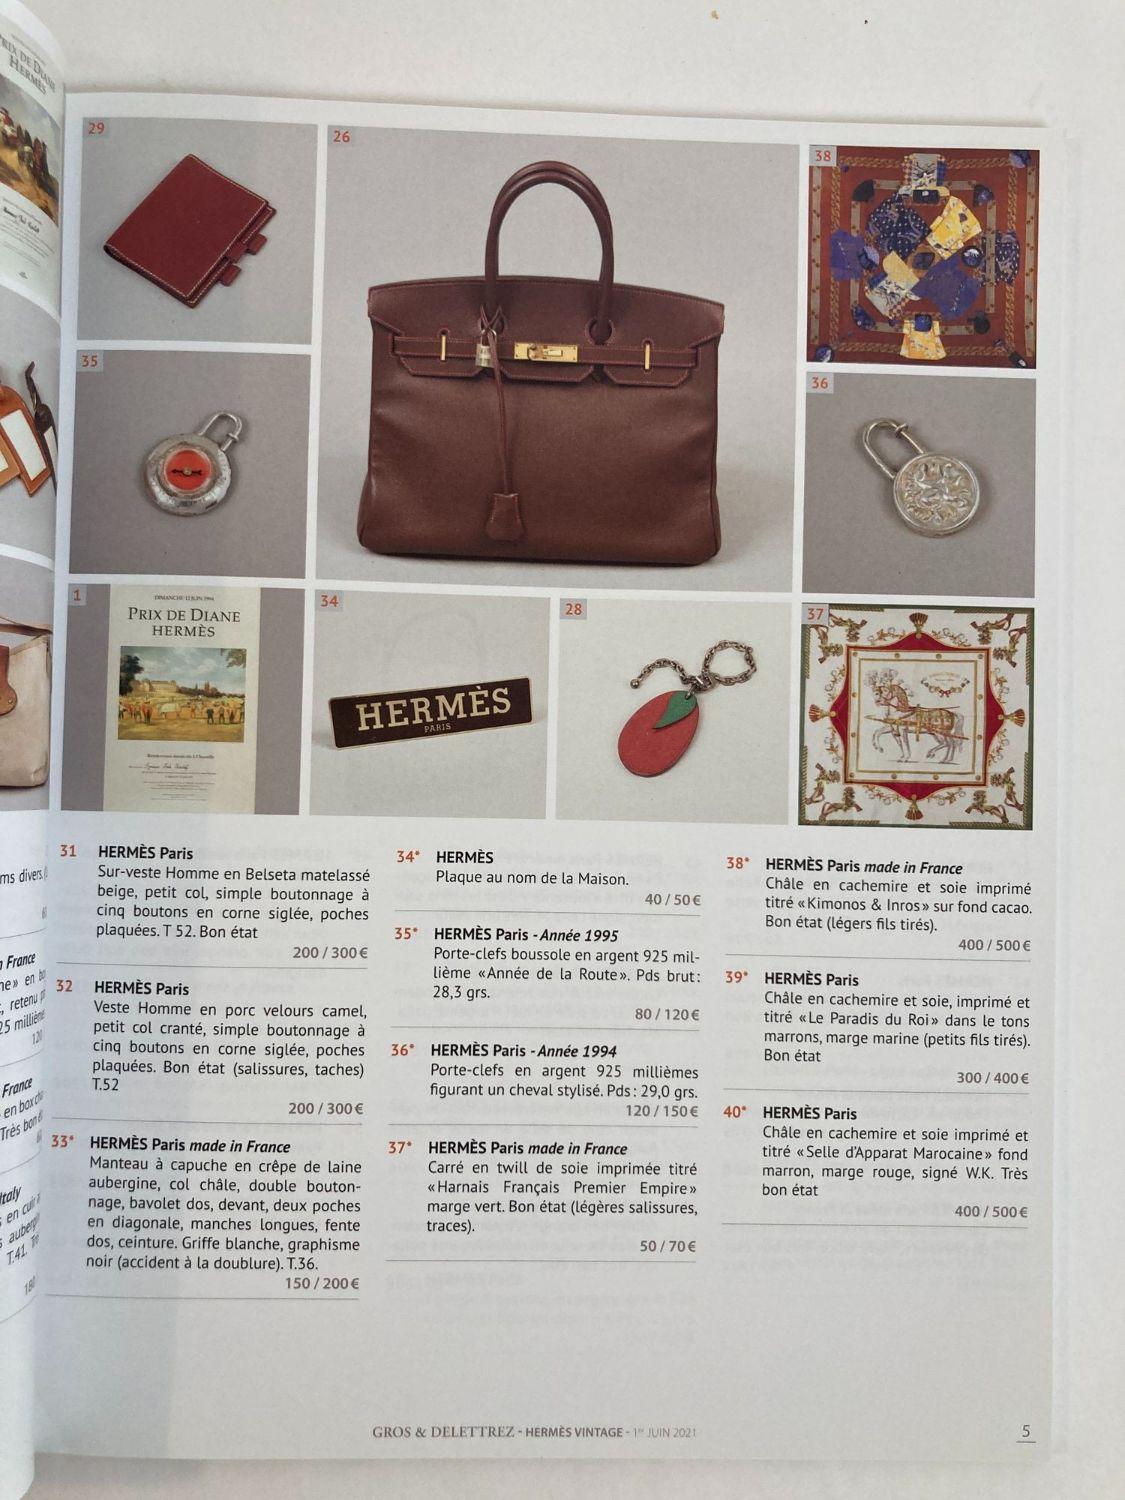 Contemporary Hermes Vintage Paris Auction Catalog 2021 Published by Gros & Delettrez For Sale